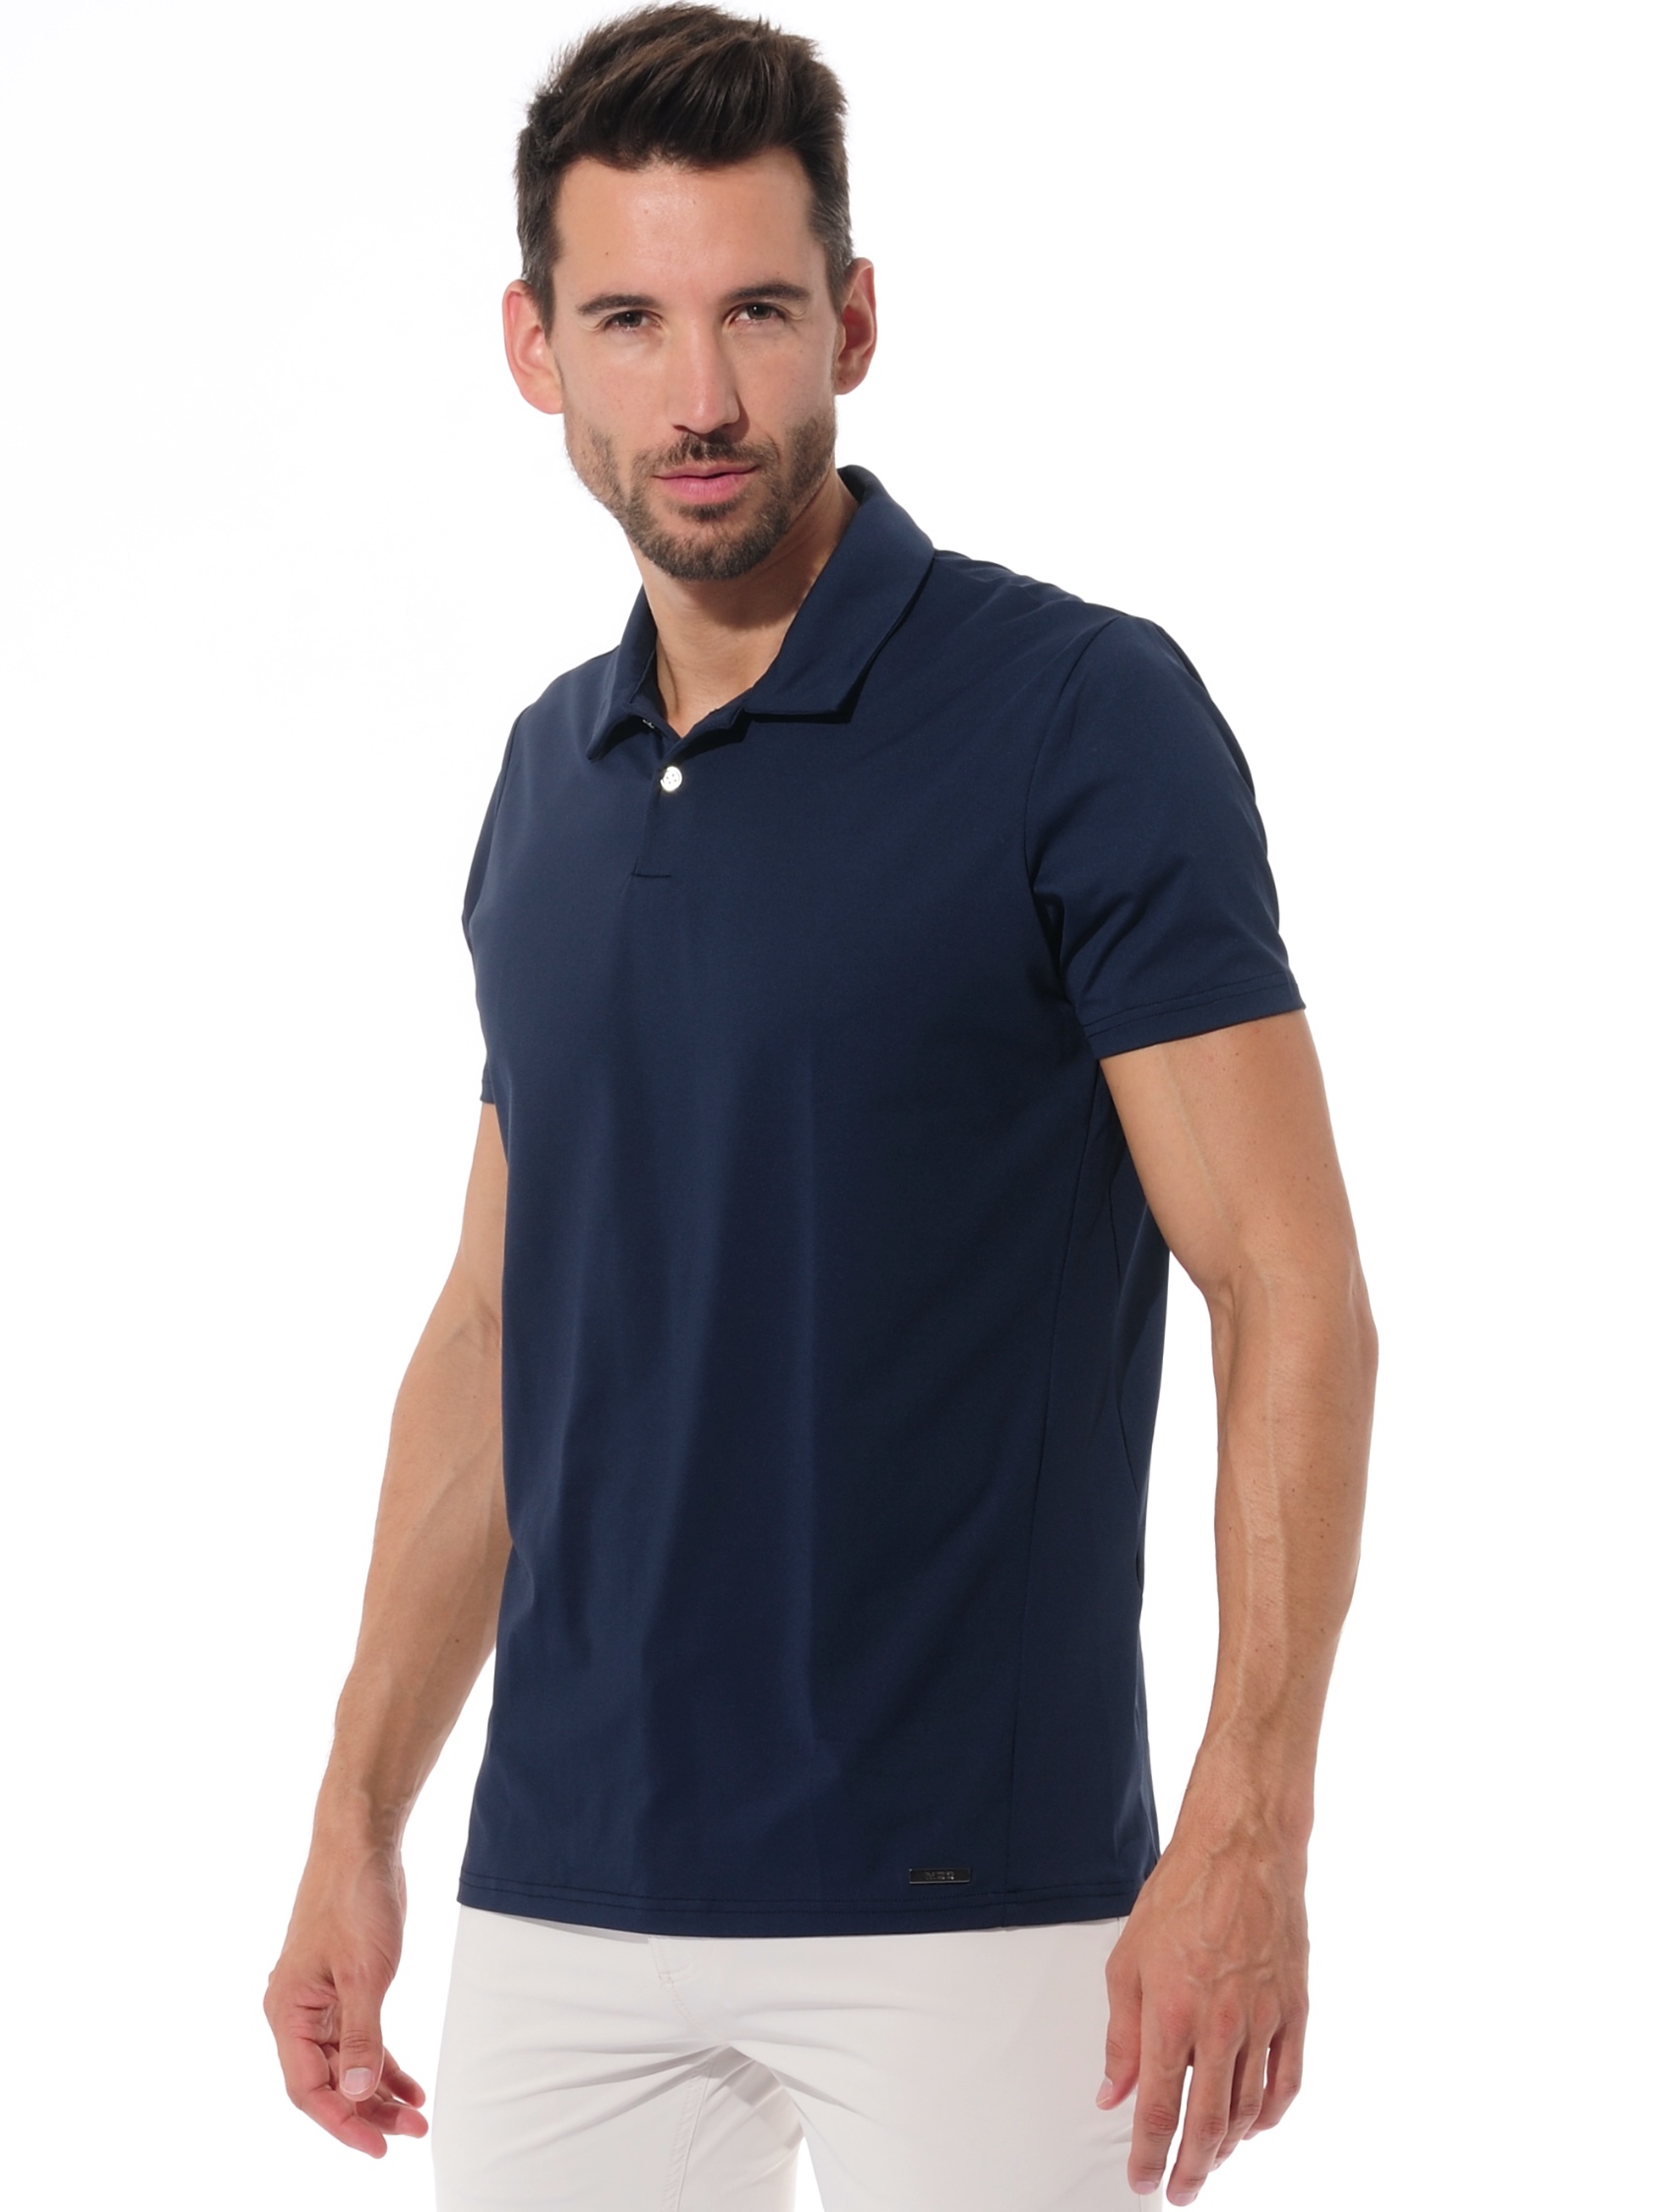 golf polo shirt navy 